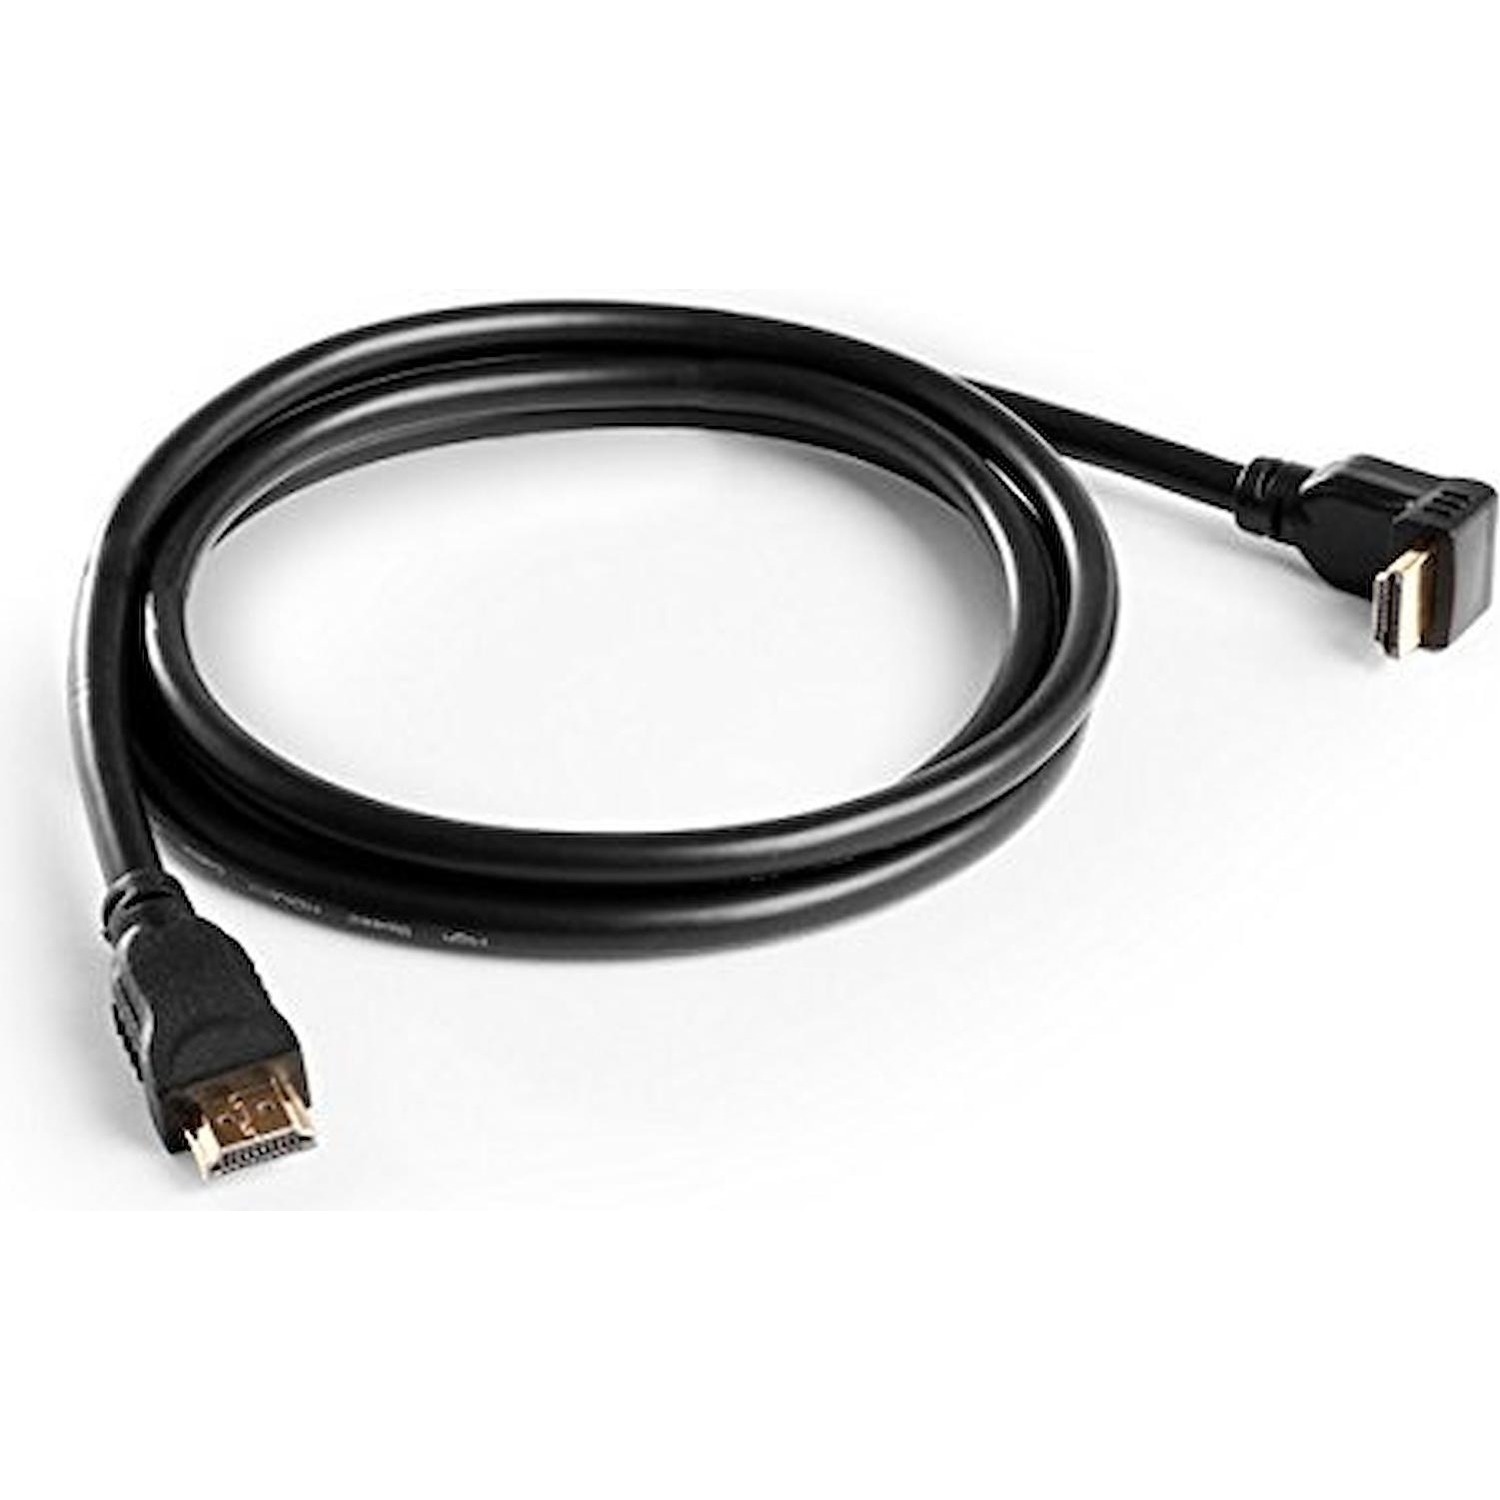 Immagine per Cavo HDMI Meliconi plug 90 gradi 1,5 mt da DIMOStore